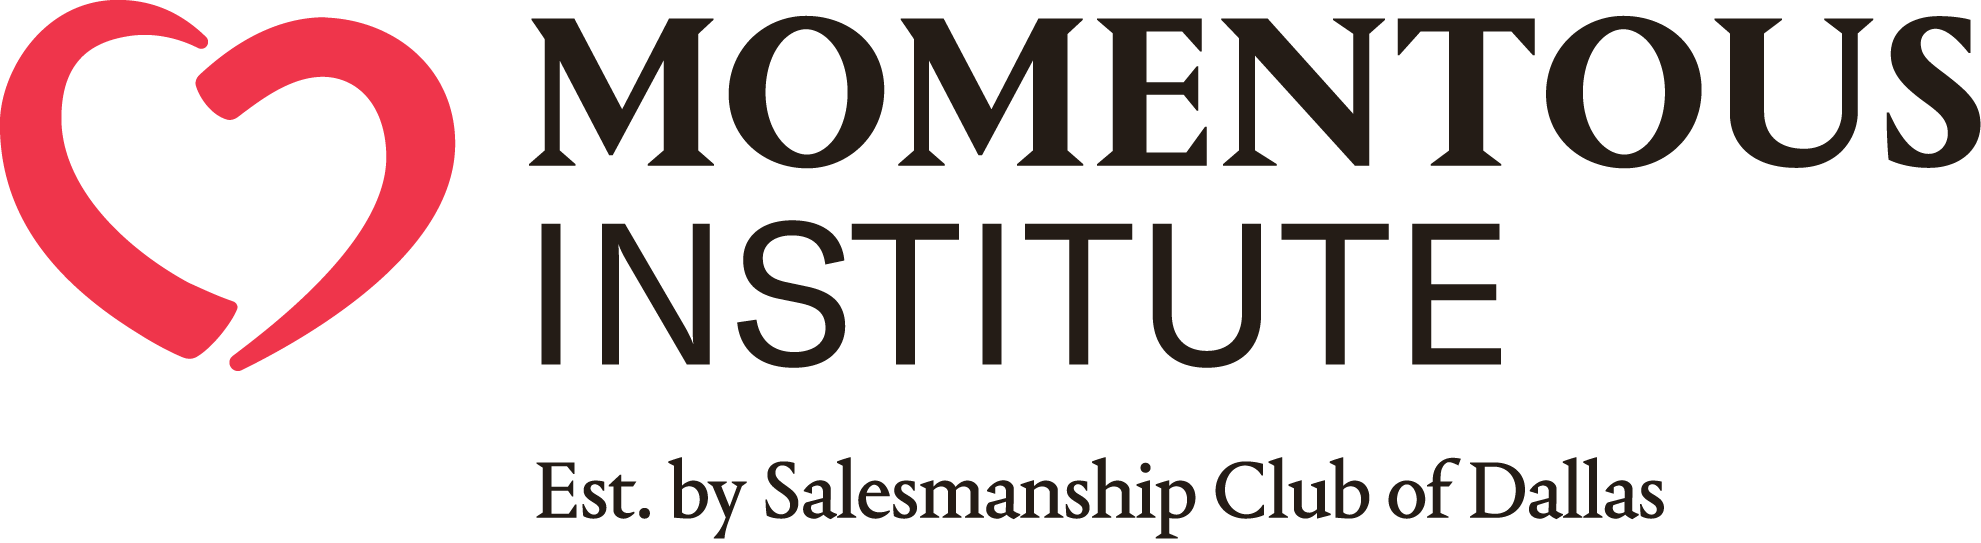 Momentous Institute Logo 